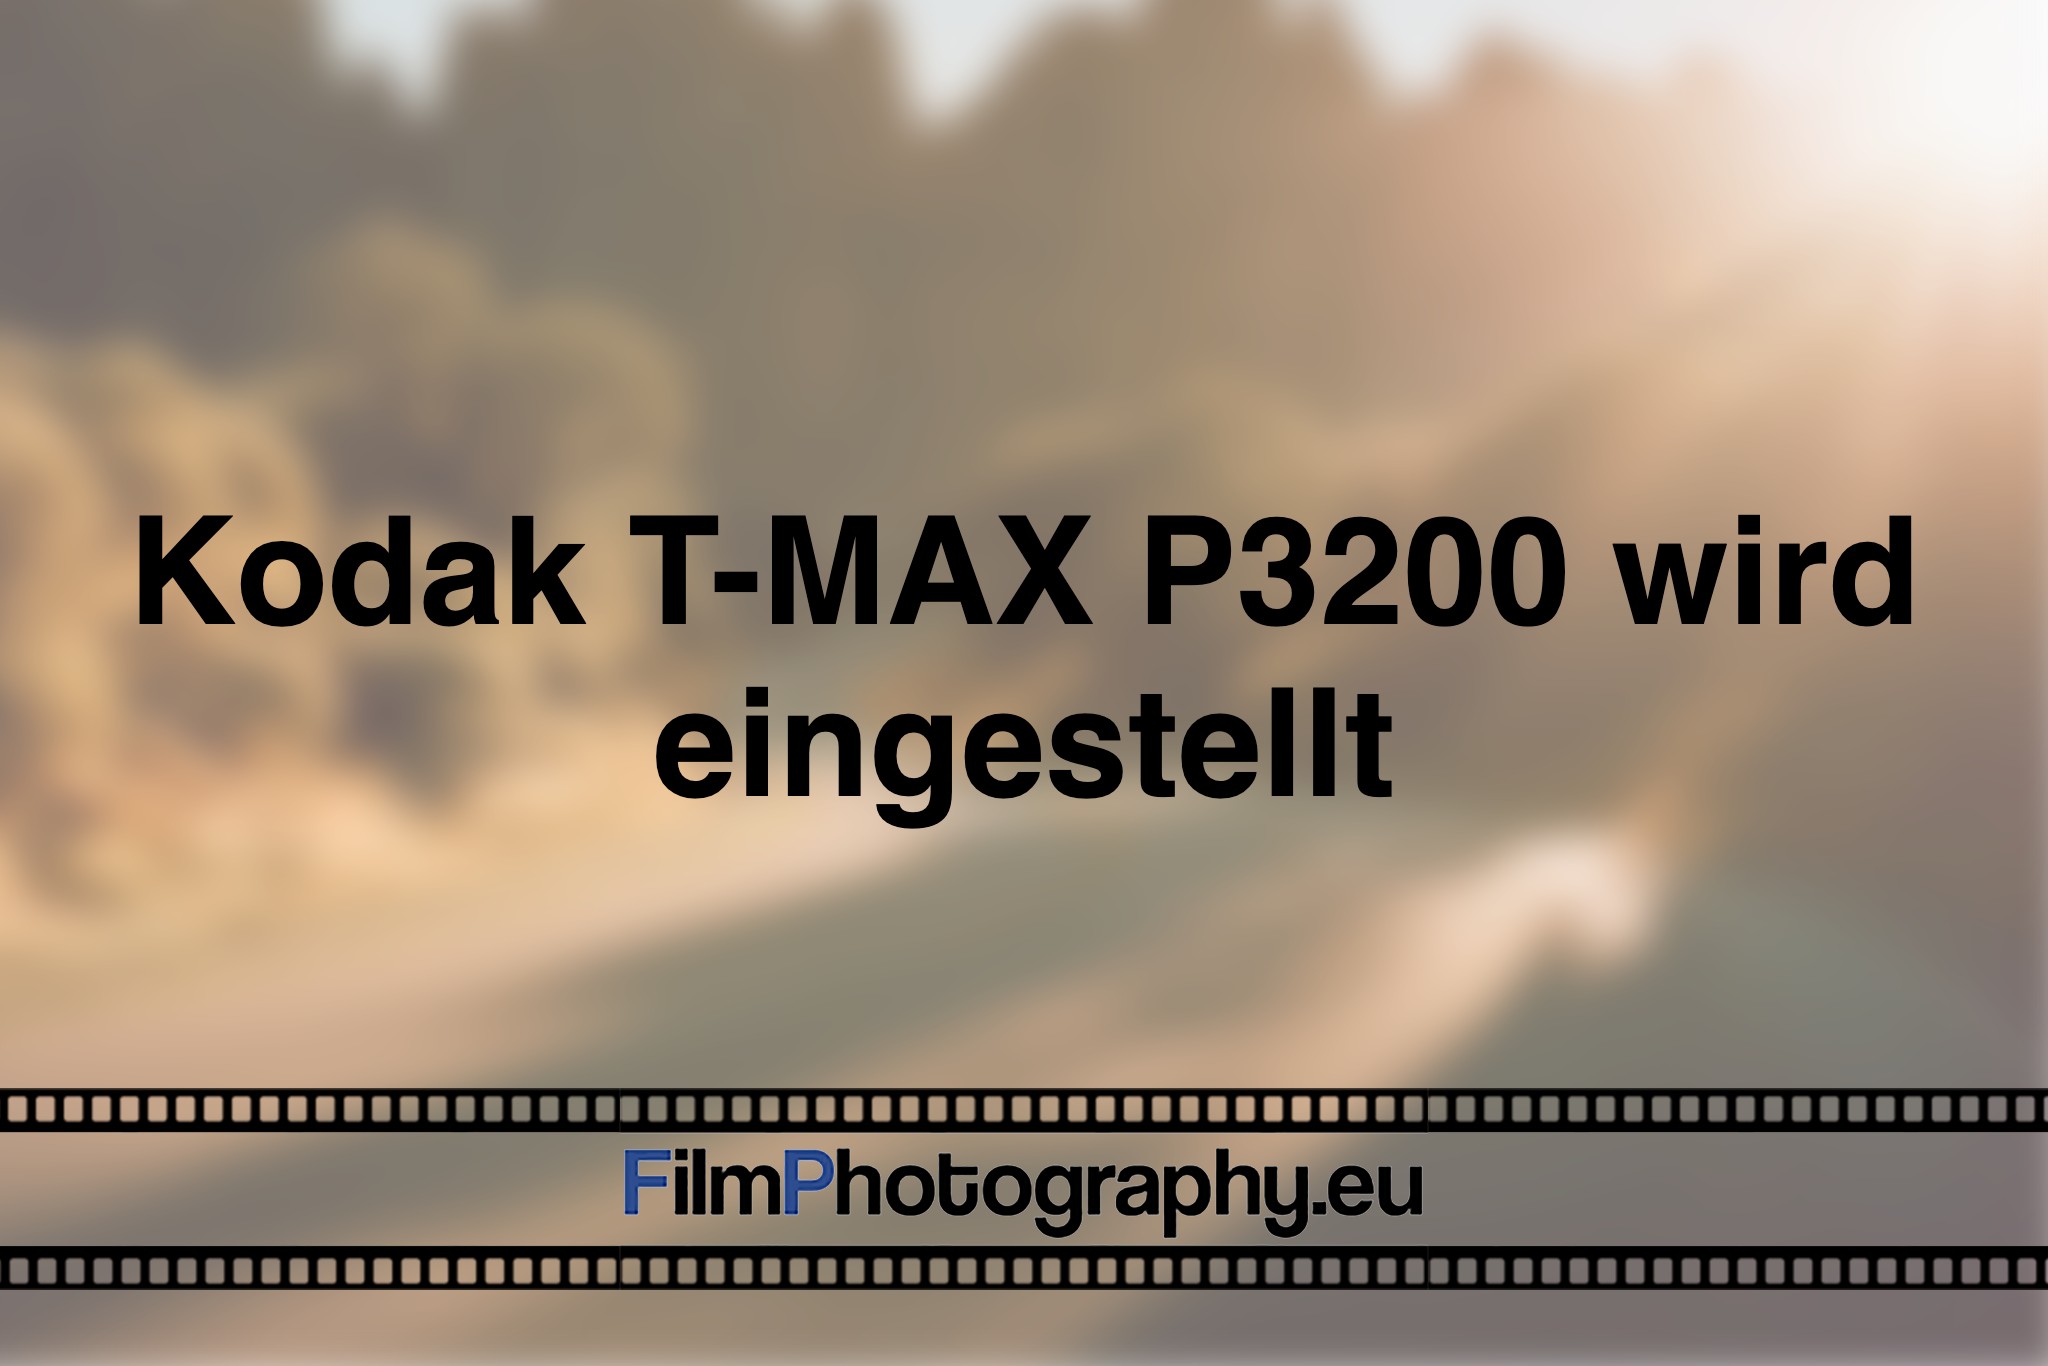 kodak-t-max-p3200-wird-eingestellt-photo-bnv